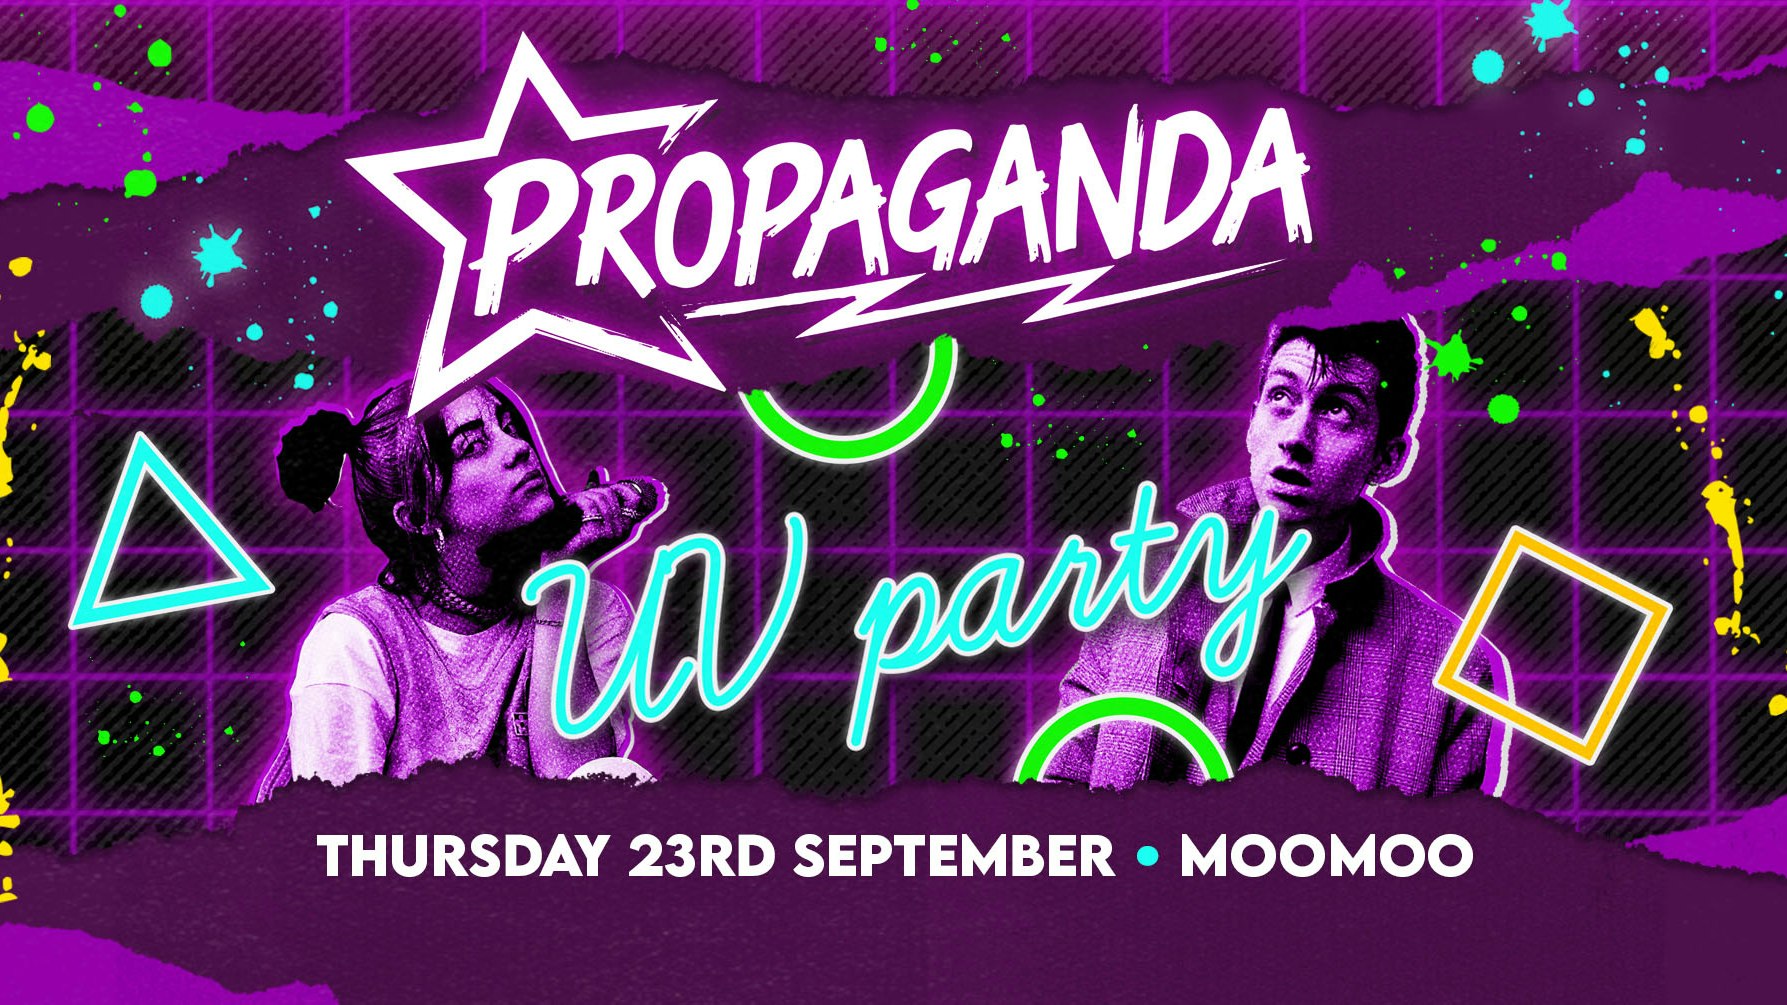 Propaganda Cheltenham – UV Party!